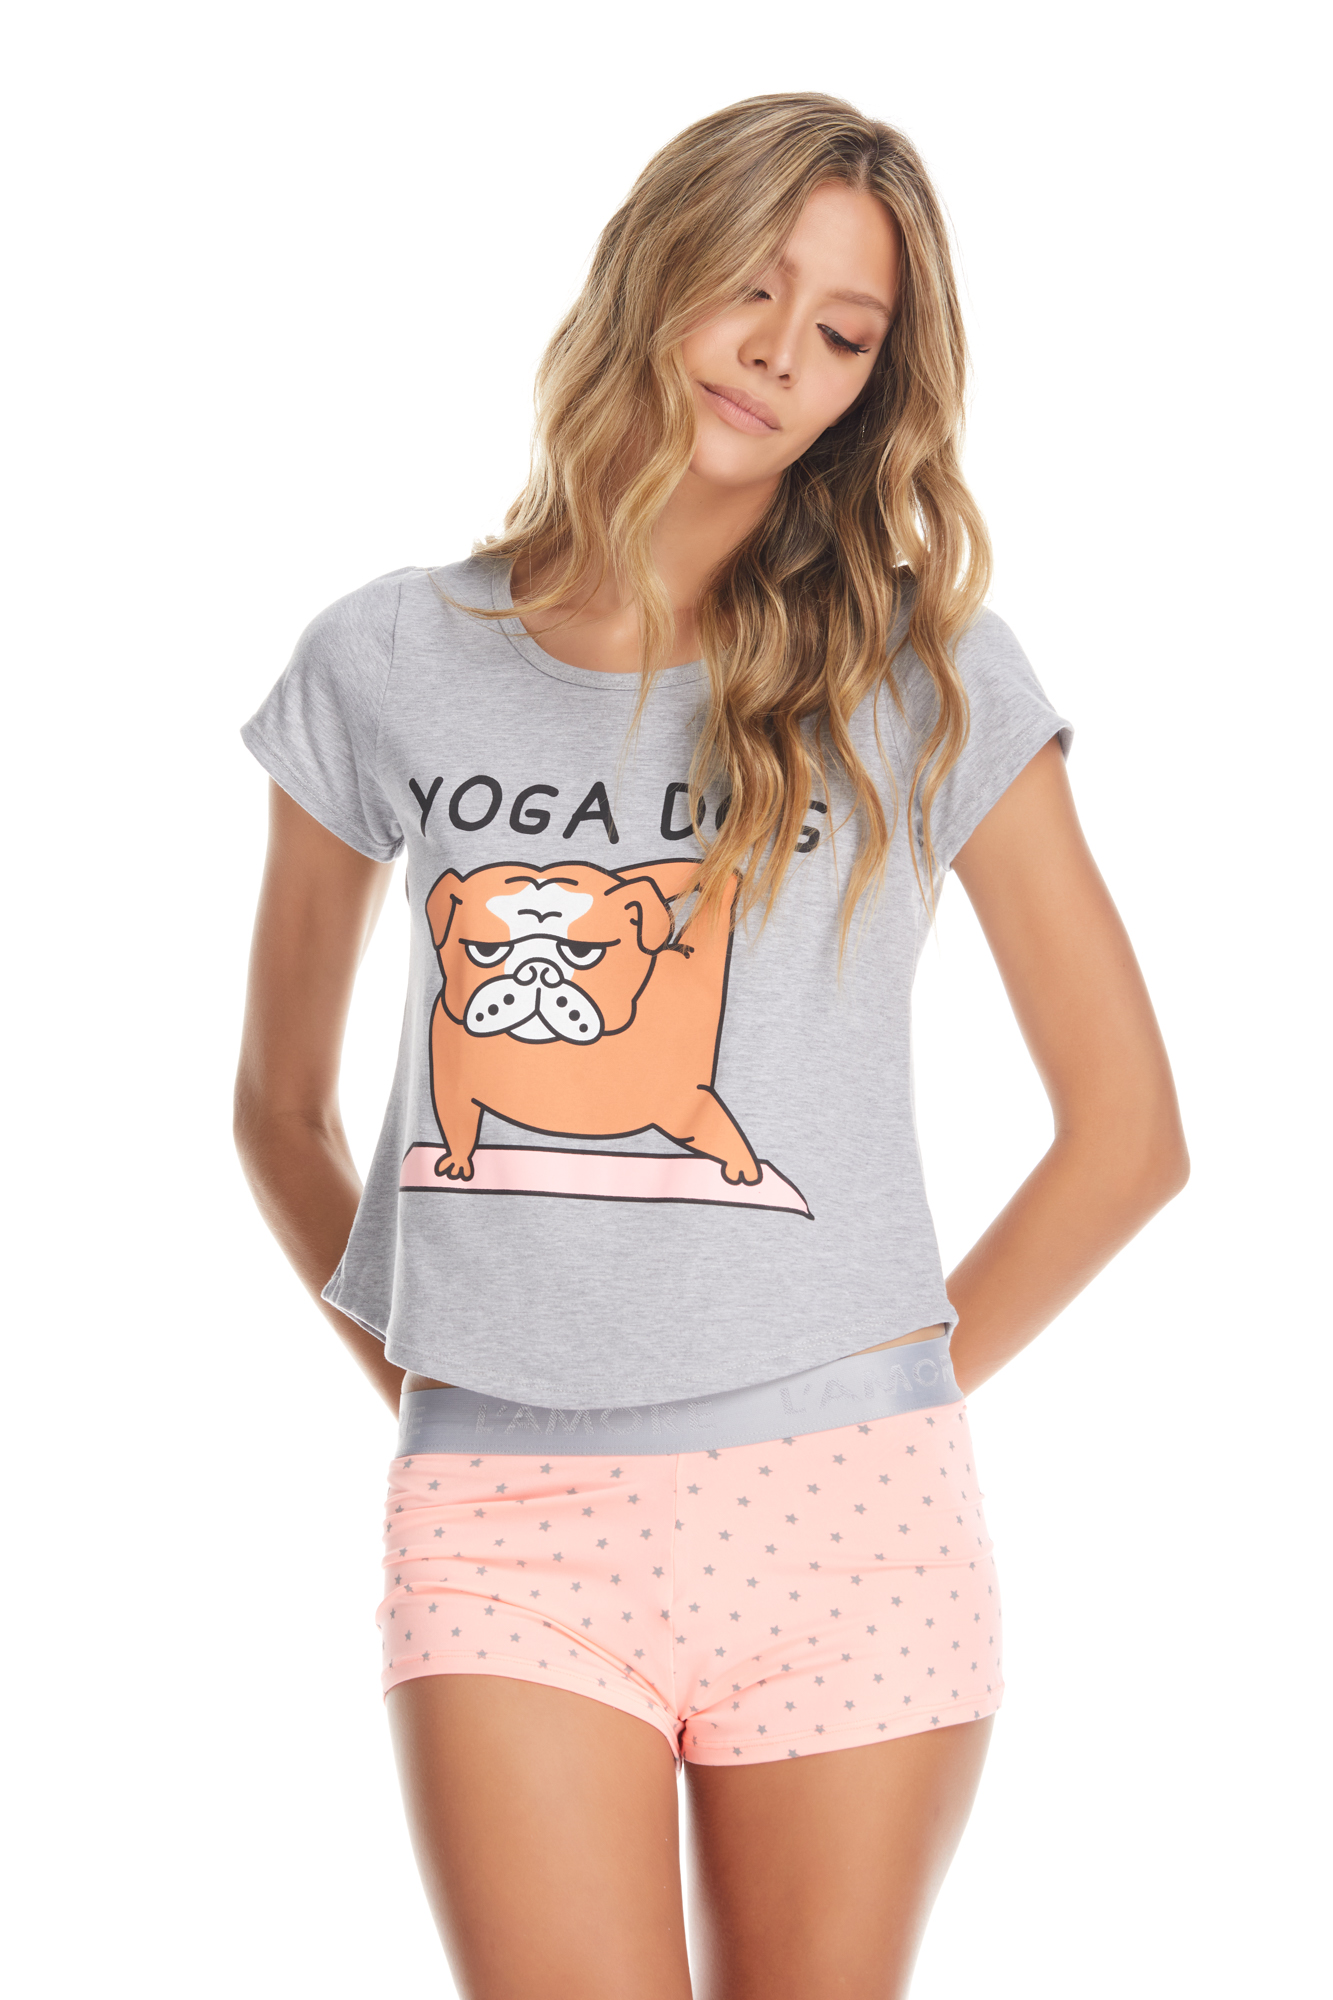 Imagen del producto: Conjunto short con pretina elástica naranja estrellas grises camisa estampada gris yoga dog